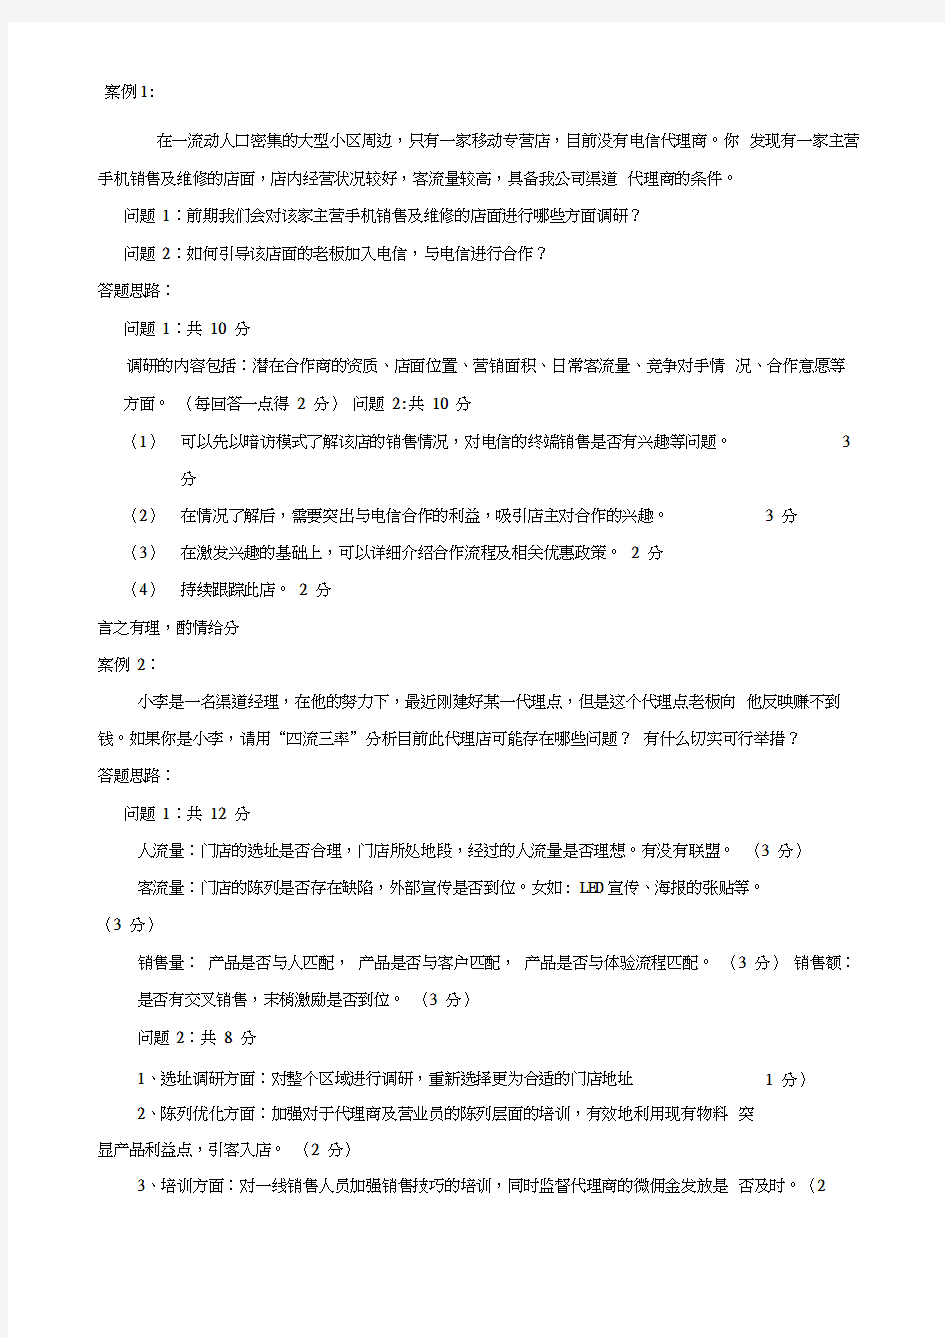 中国电信渠道经理技能认证五级实操考试题目及评分标准LAST